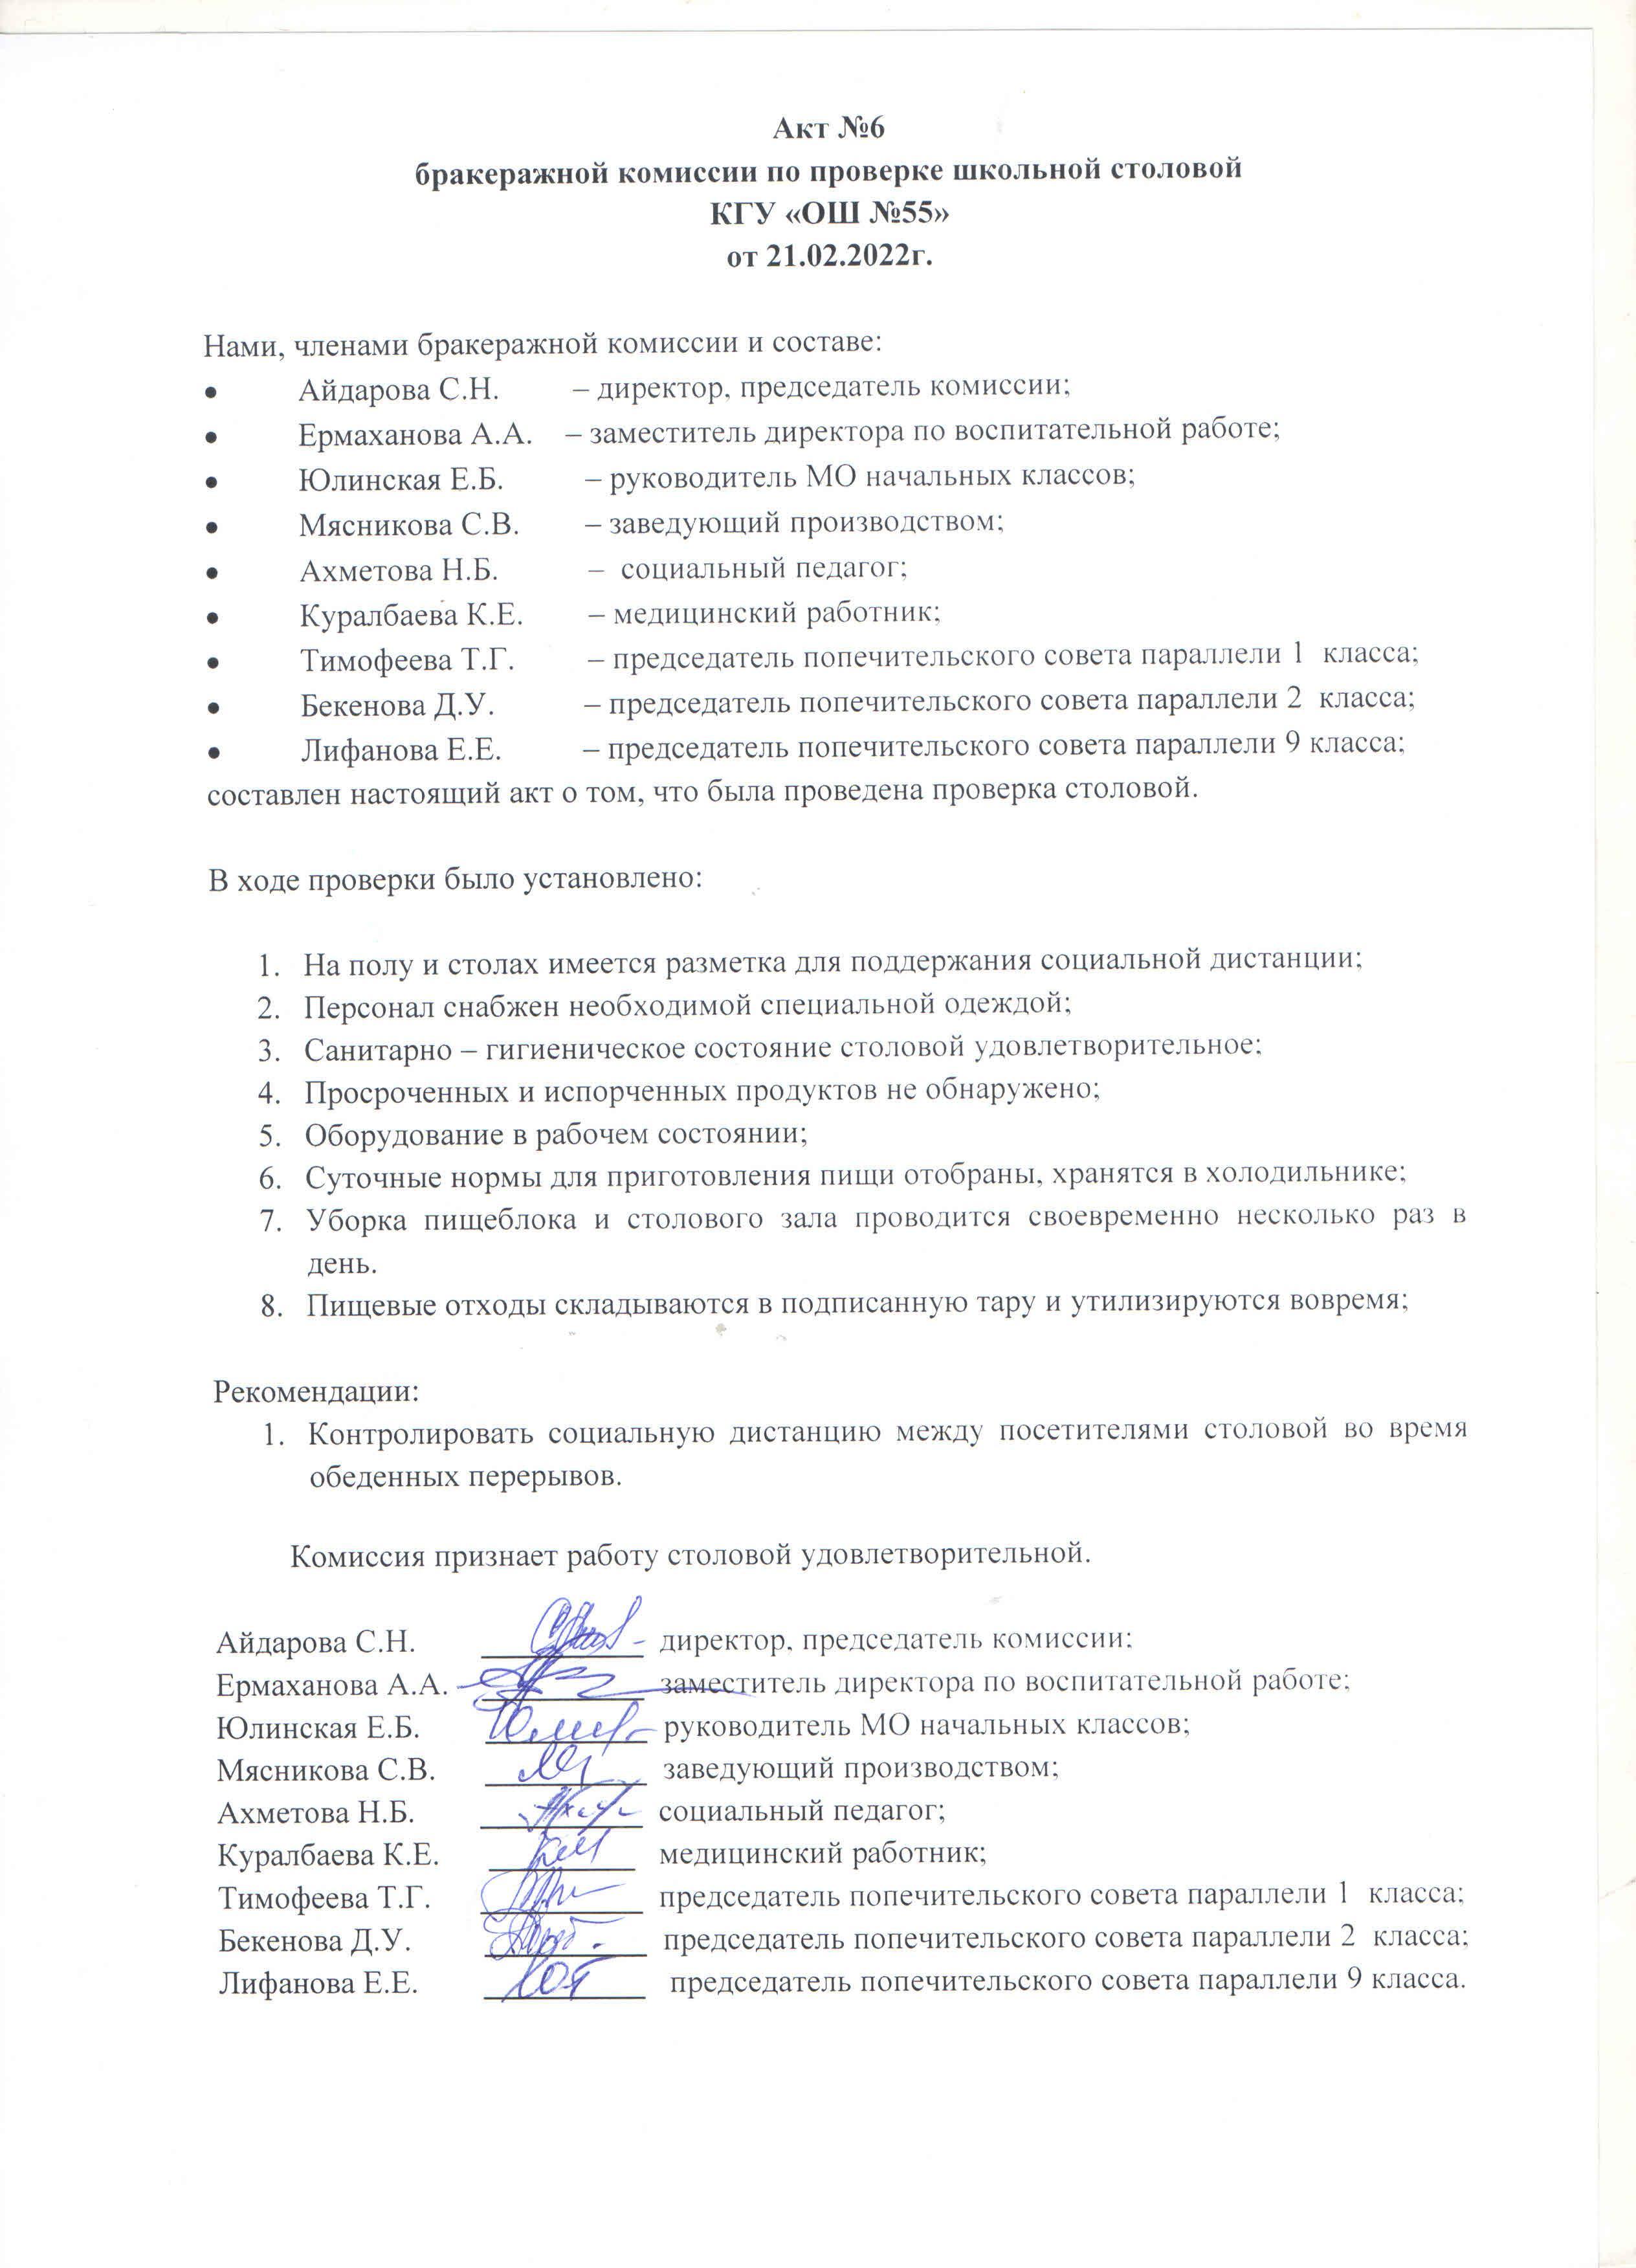 Акт №6 бракеражной комиссии по проверке школьной столовой КГУ "ОШ №55 от 21.02.2022 г.